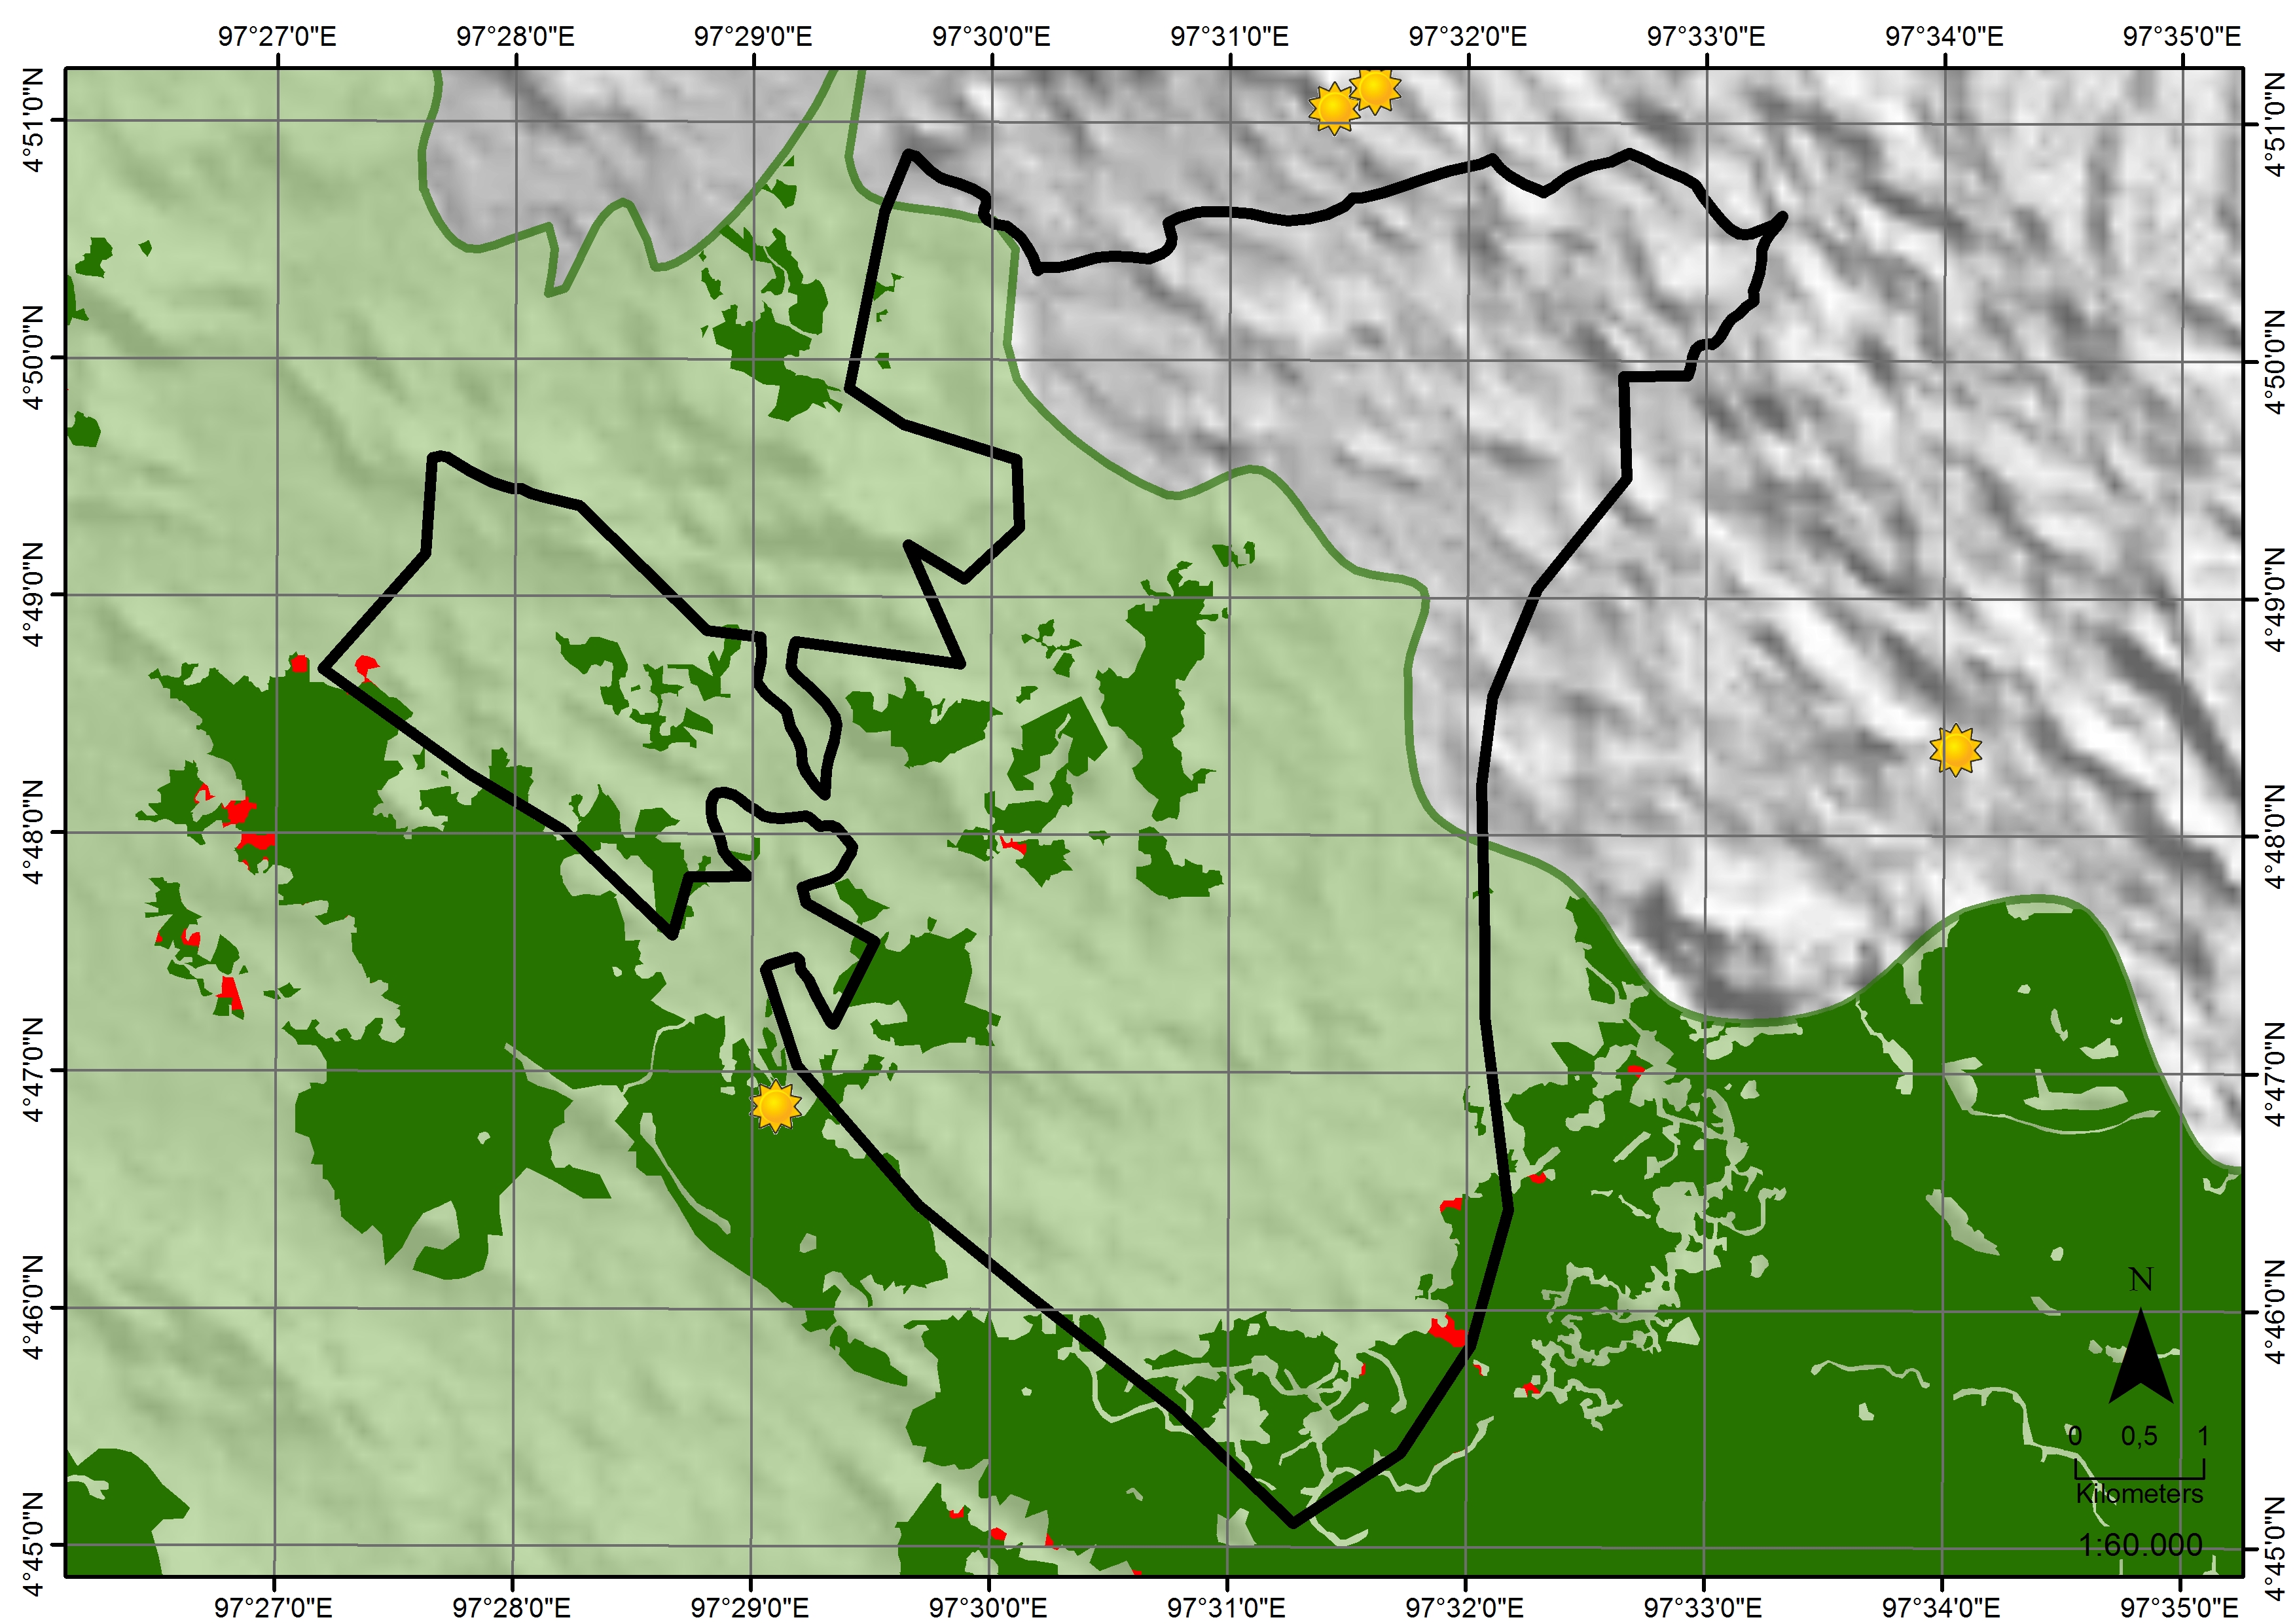 Tualang Raya satellite analysis image 